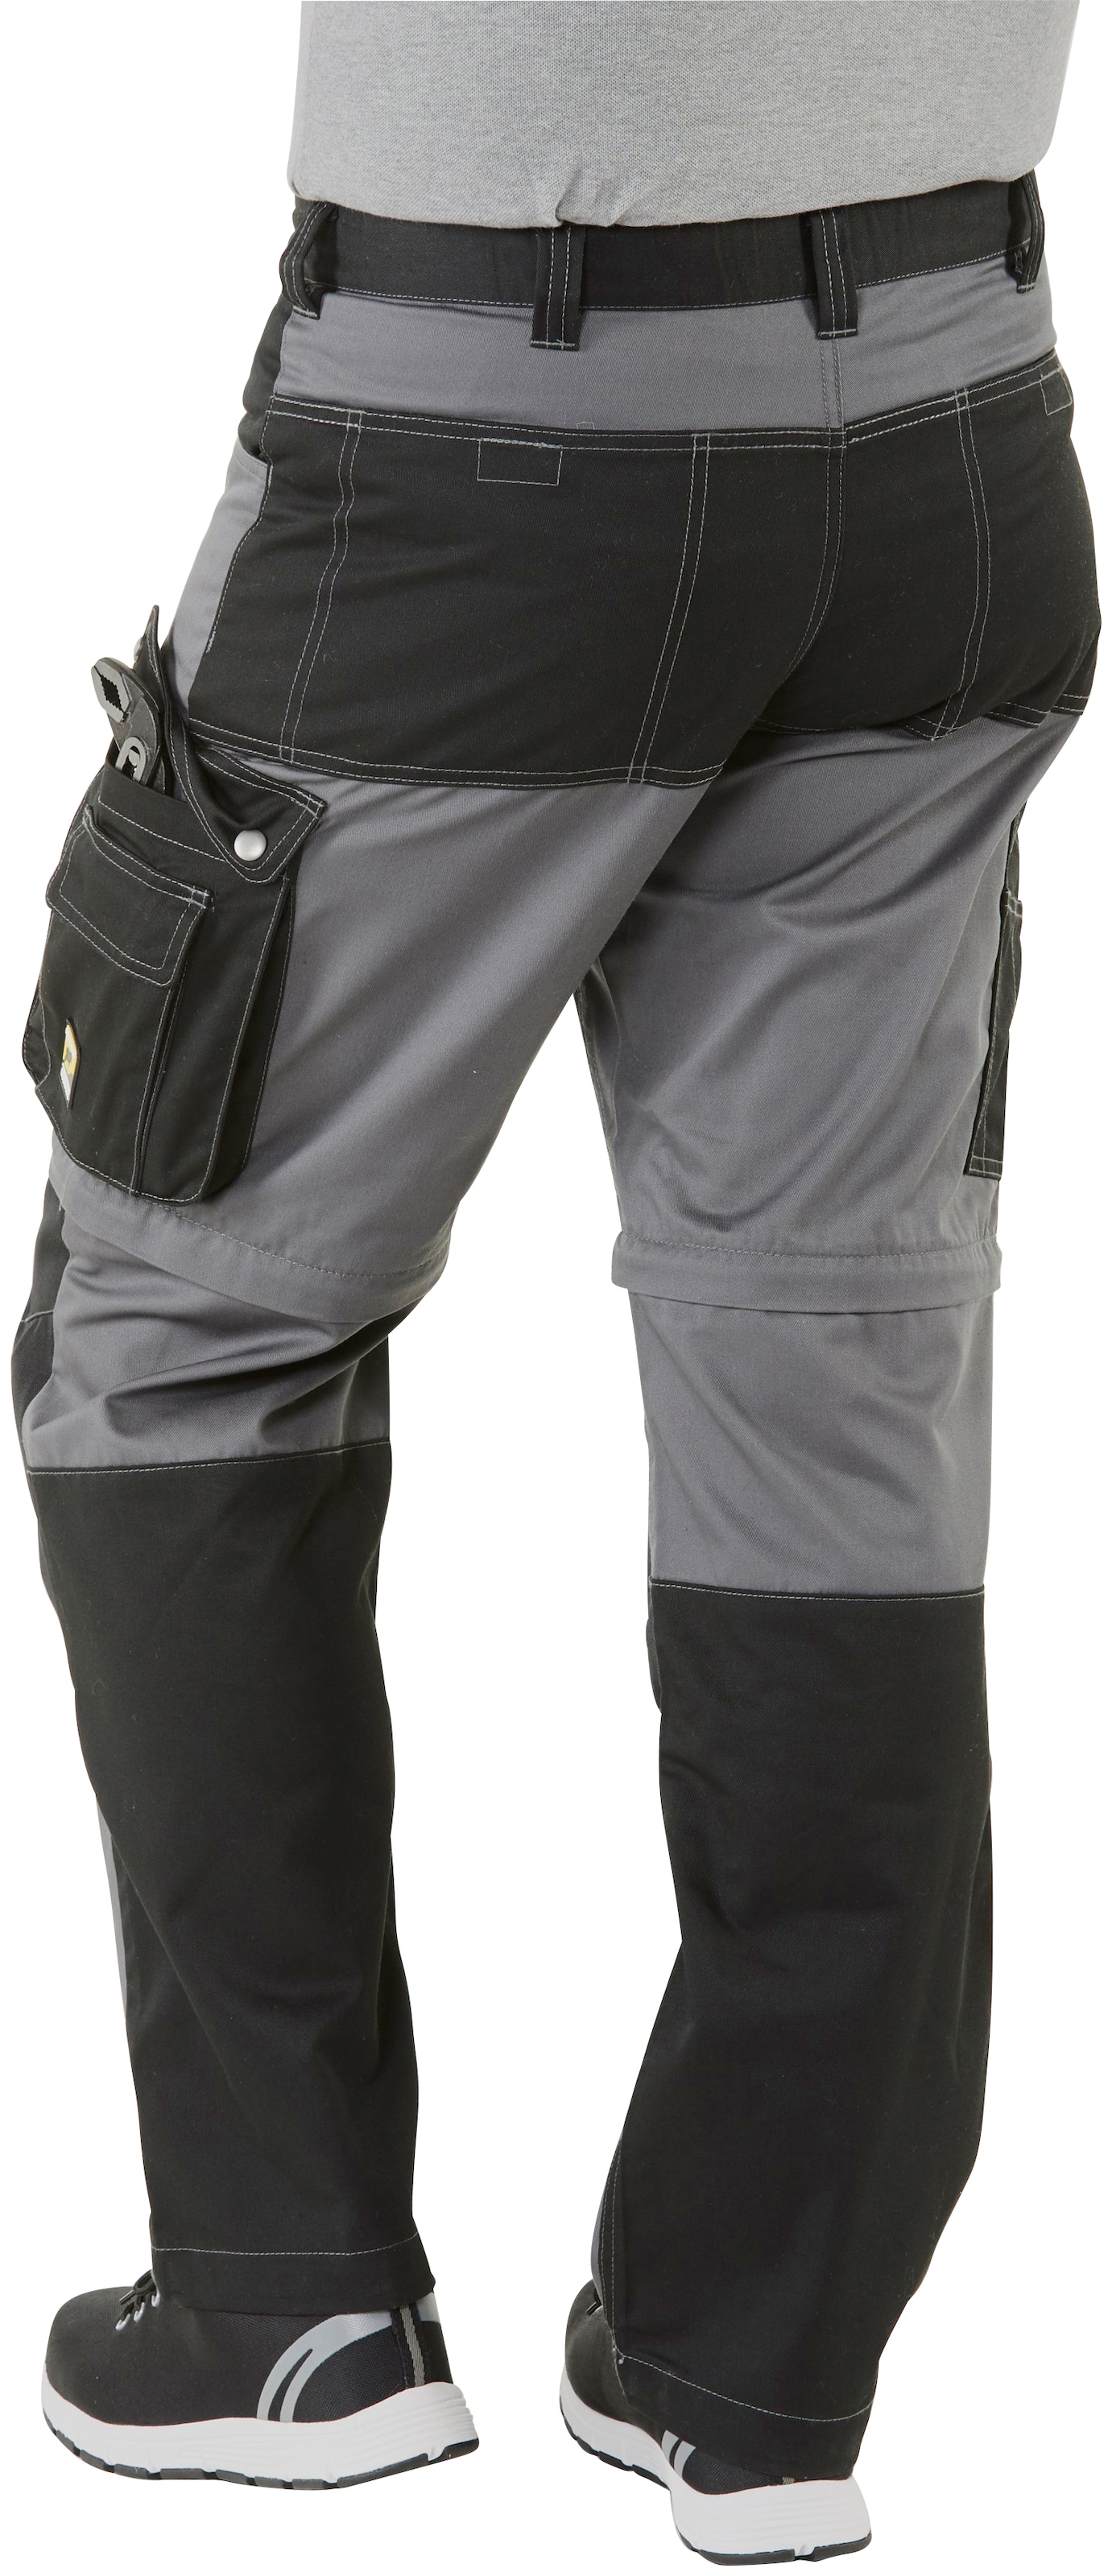 Northern Country Arbeitshose »Worker«, (verstärkter Kniebereich,  Beinverlängerung möglich, 8 Taschen), mit Zipp-off Funktion: Shorts und  lange Arbeitshose in einem günstig | BAUR